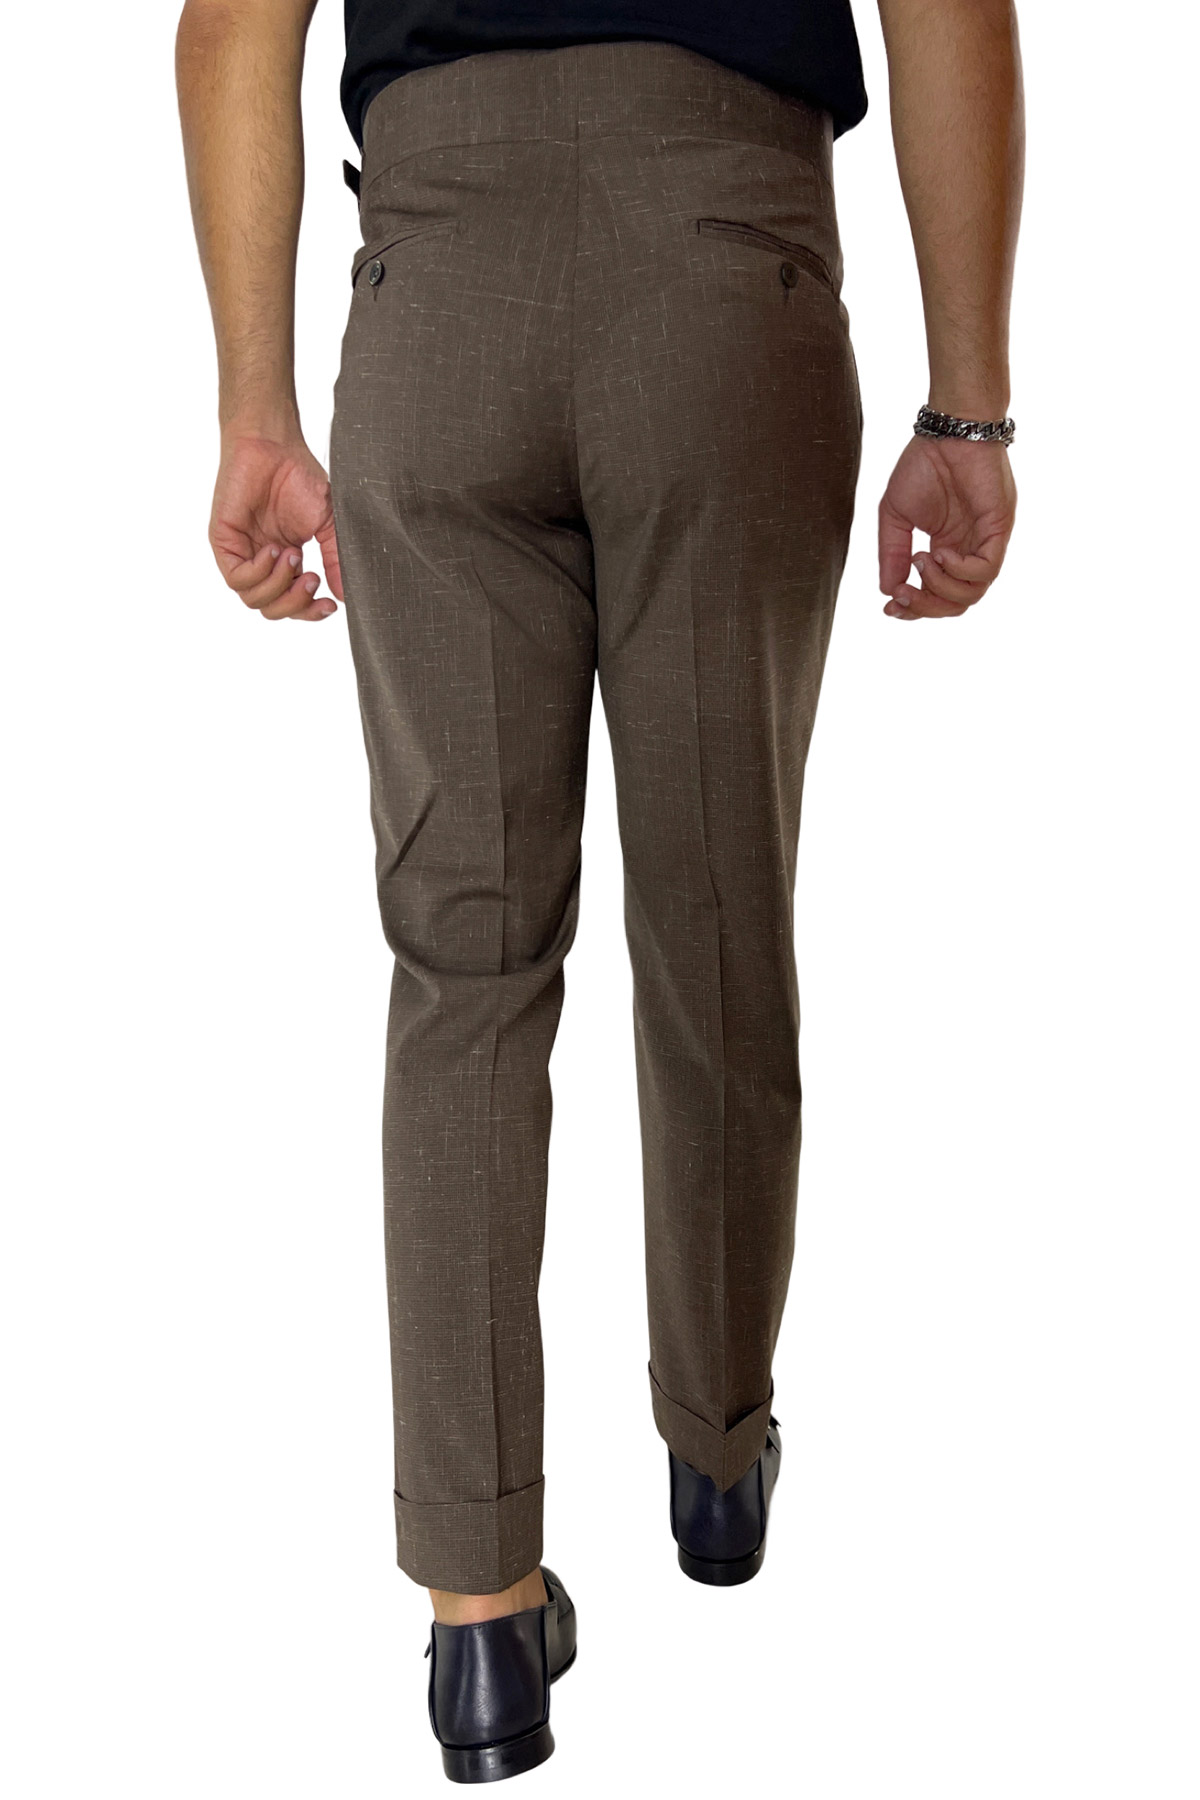 Pantalone uomo marrone pied de poule vita alta modello biforcato in fresco lana doppia pinces